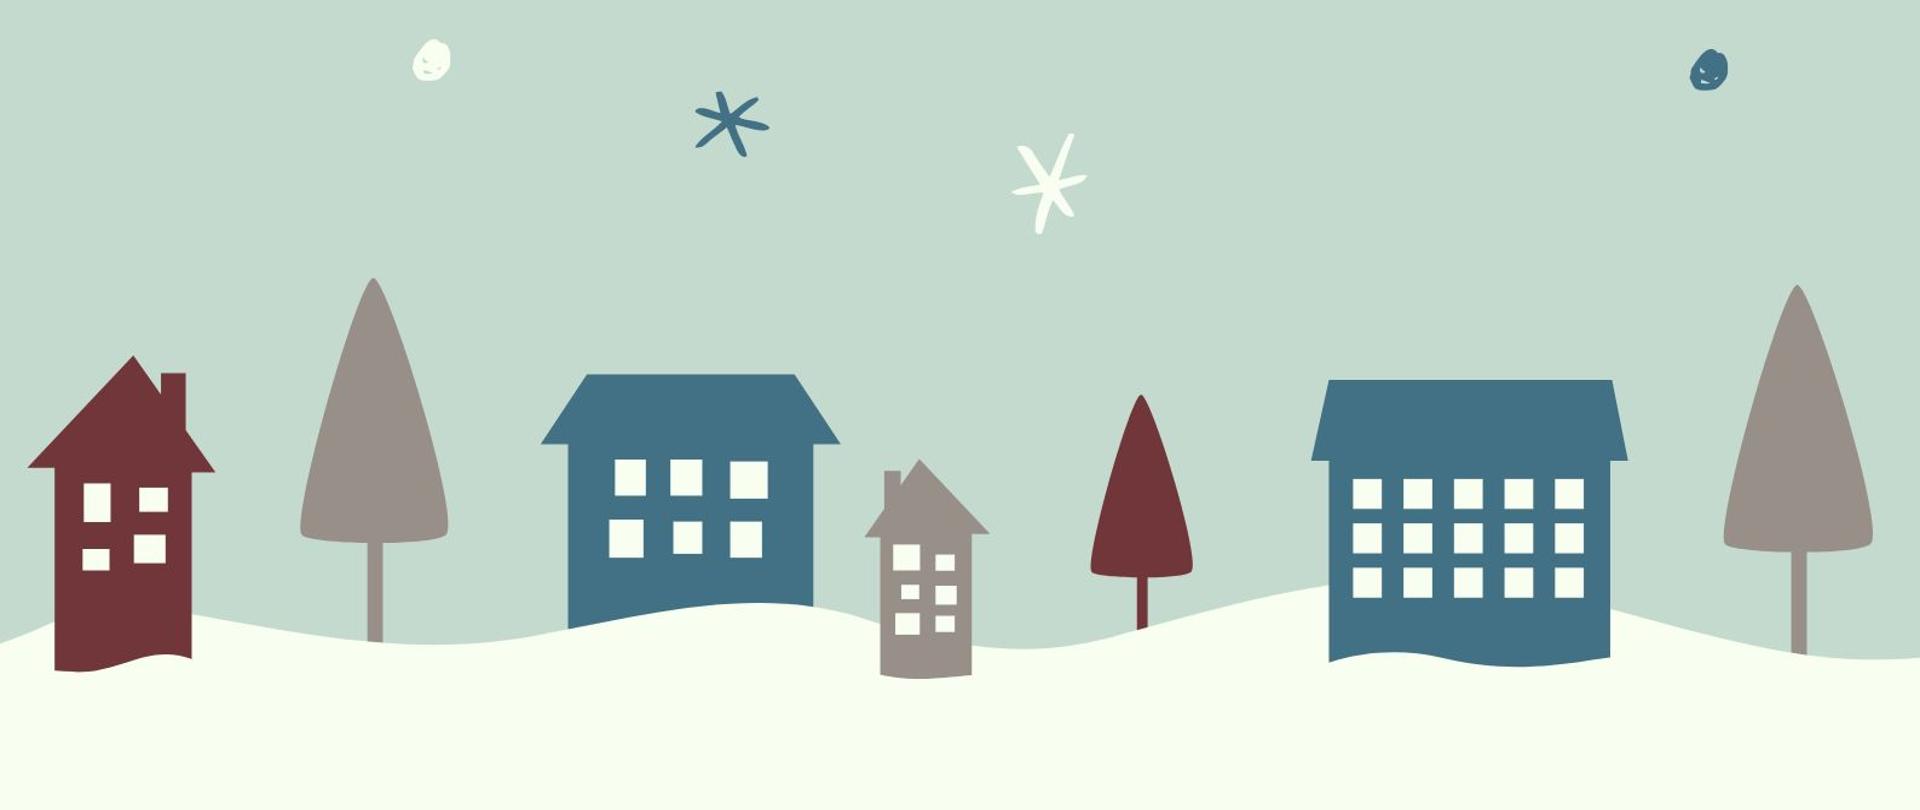 plakat na tle szarozielonego nieba z płatkami śniegu napisy w kolorze bordowym i niebieskim z nazwą koncertu, programem i terminem, na dole zarys domków i choinek na śniegu